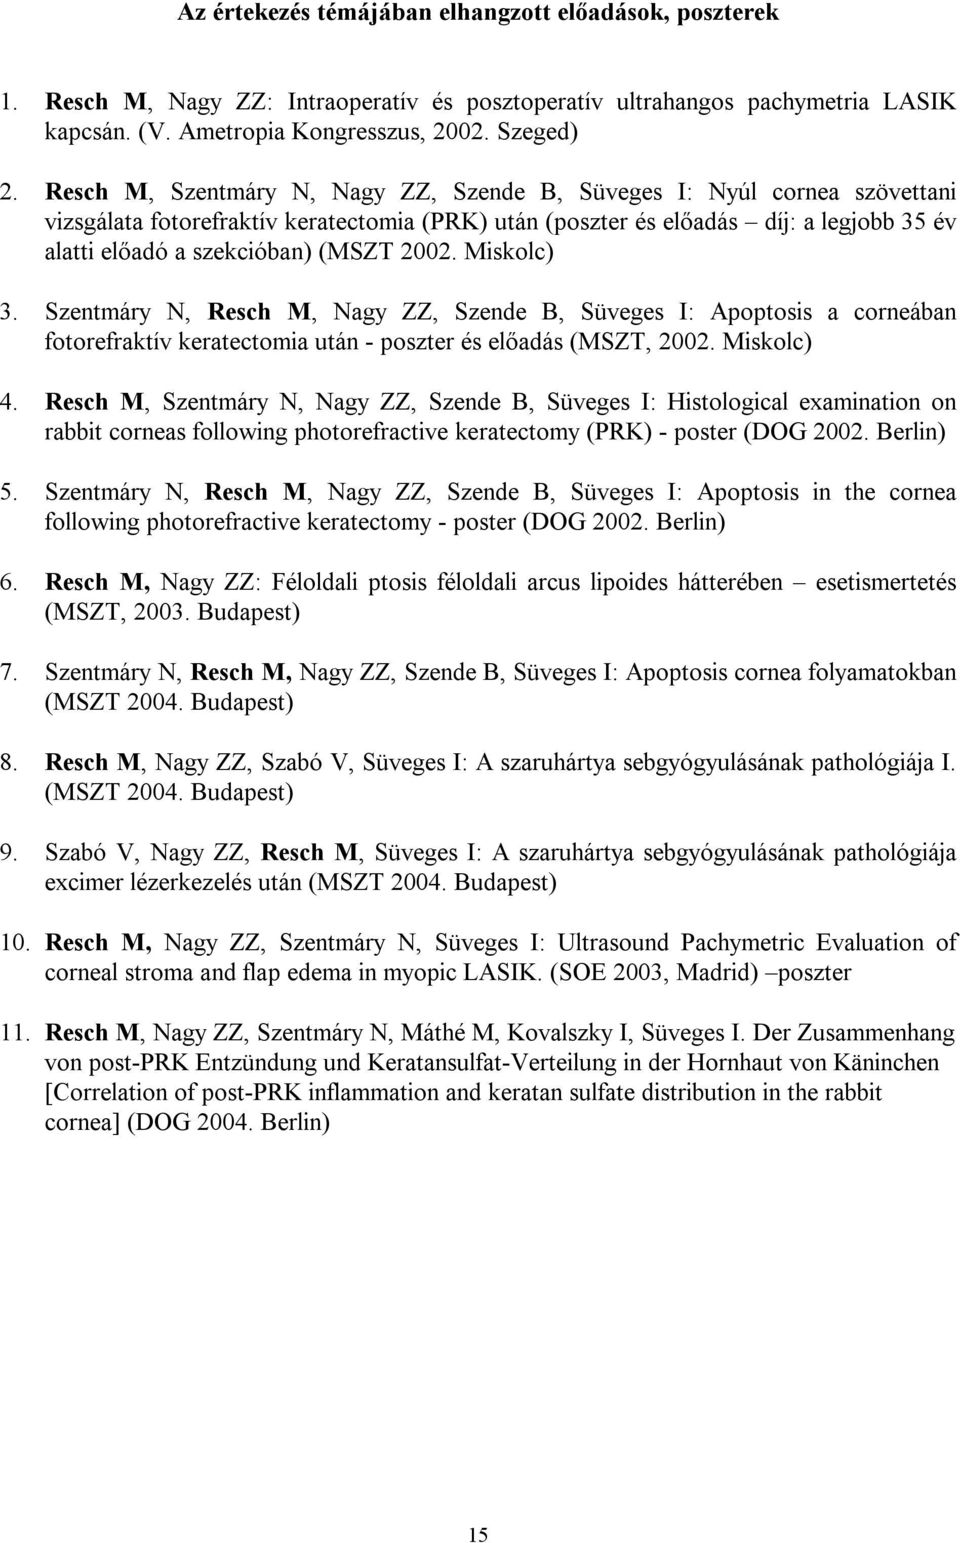 2002. Miskolc) 3. Szentmáry N, Resch M, Nagy ZZ, Szende B, Süveges I: Apoptosis a corneában fotorefraktív keratectomia után - poszter és előadás (MSZT, 2002. Miskolc) 4.